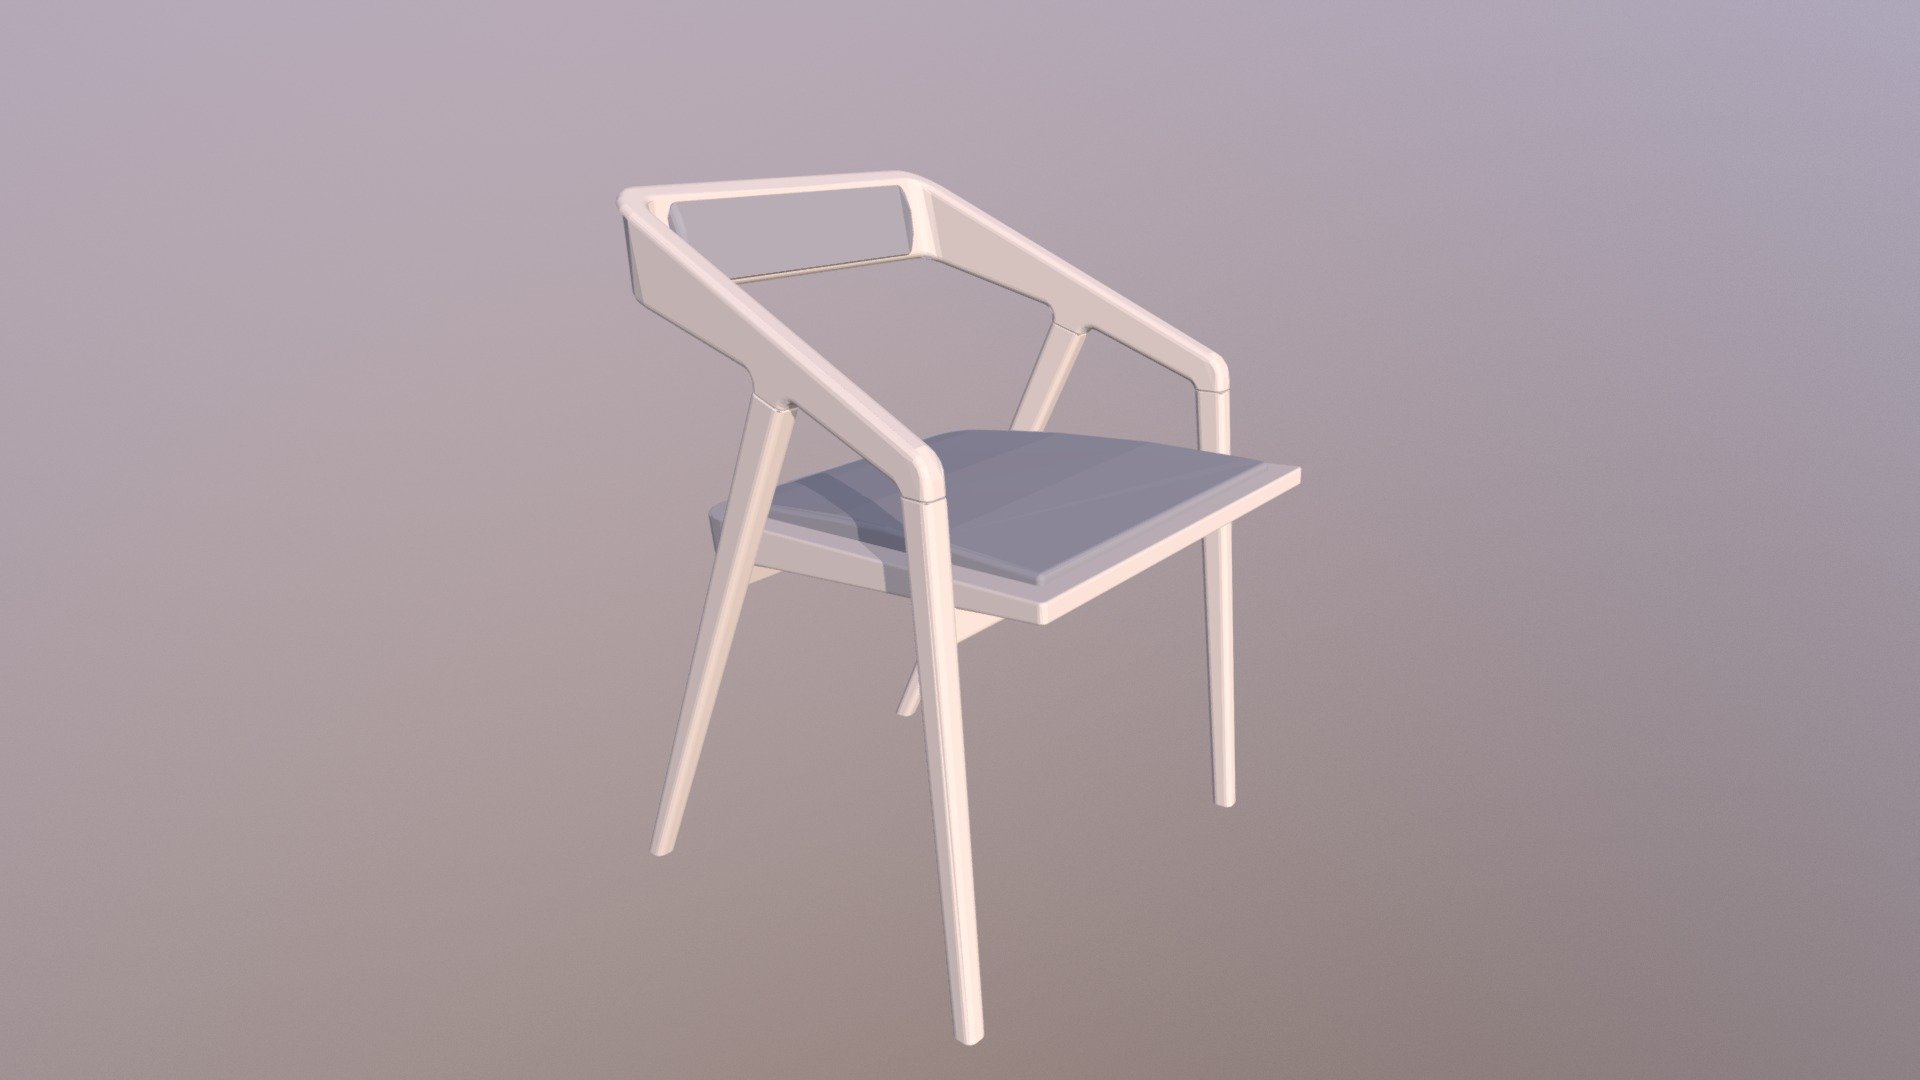 Katakana Chair